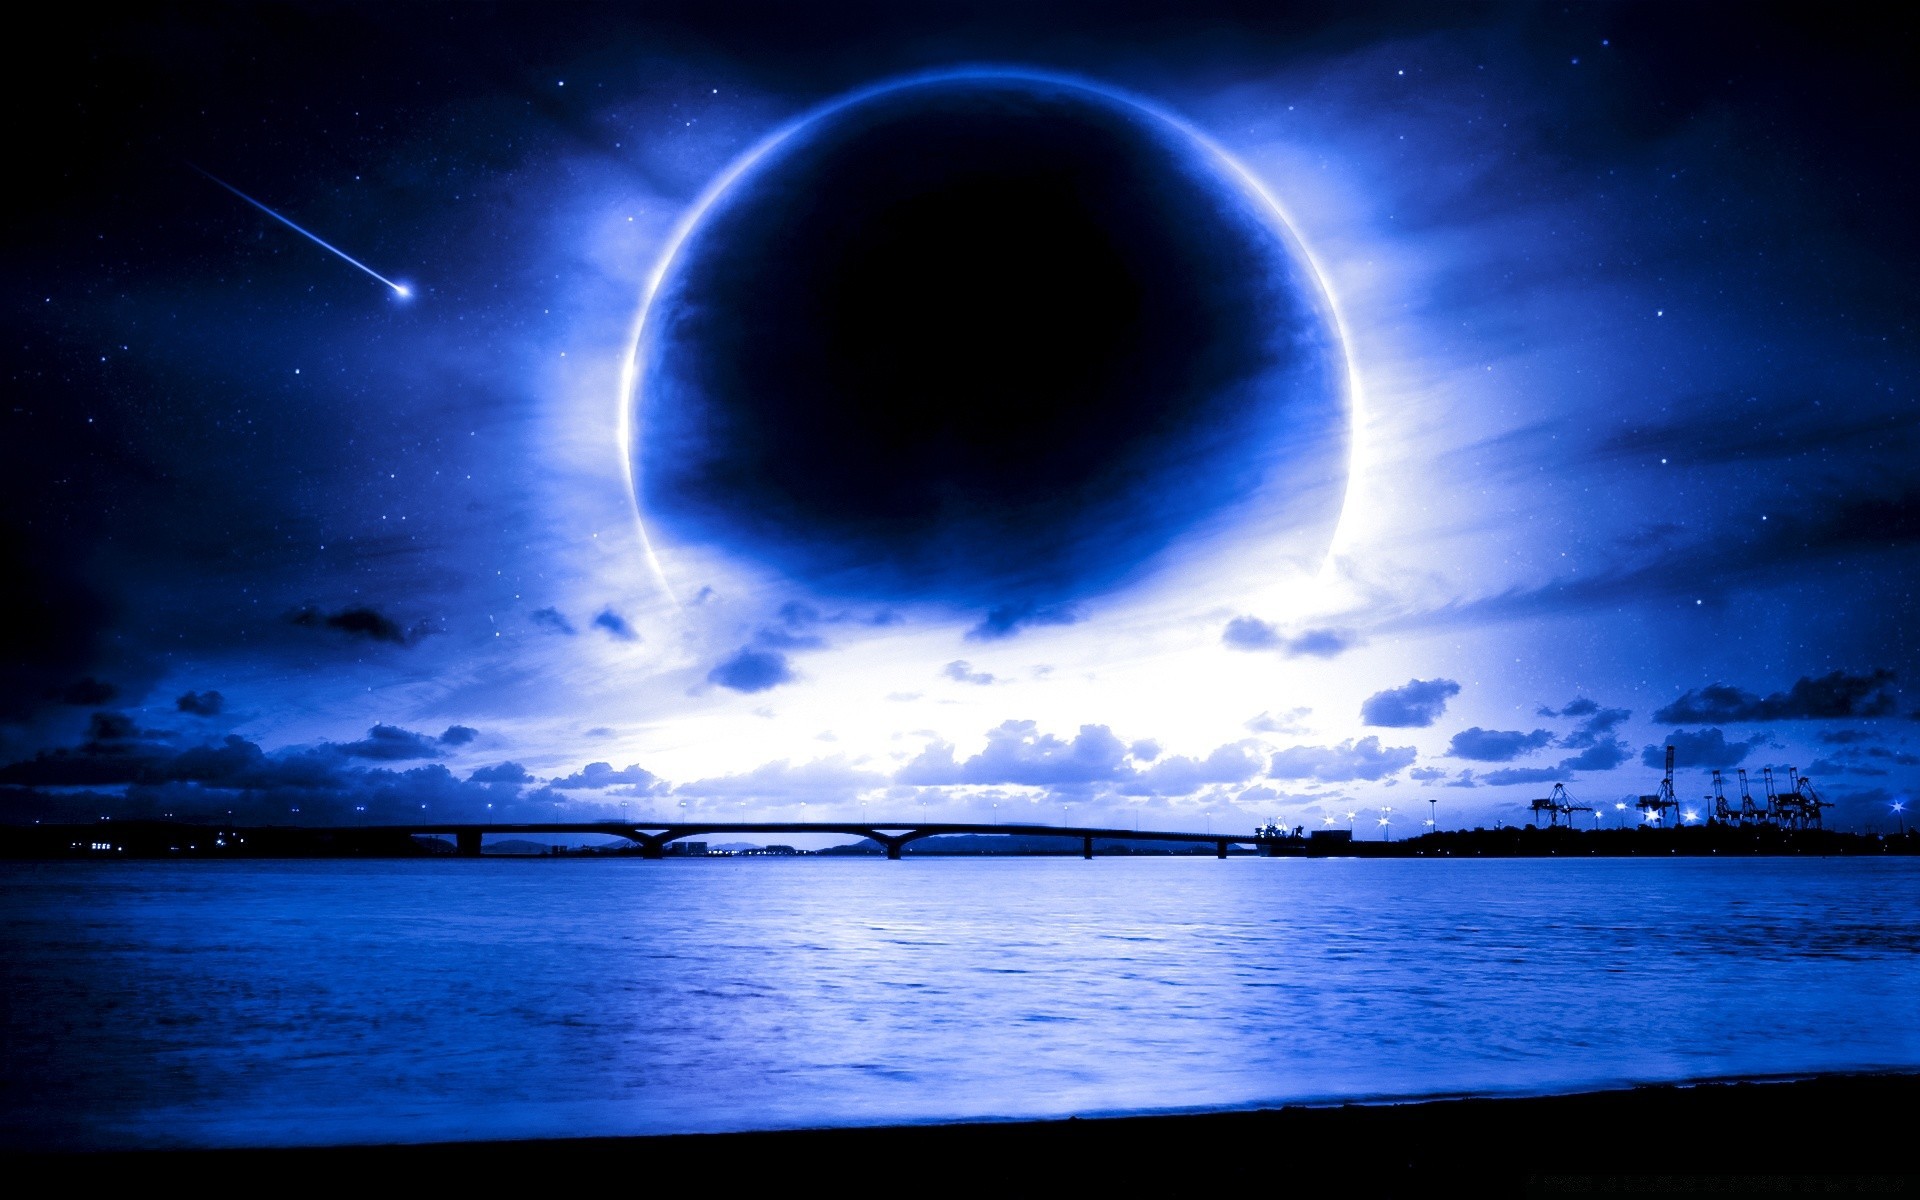 креатив луна солнце море небо океан астрономия темный пространство рассвет воды свет закат вечером природа планеты горизонт сумрак отражение рабочего стола